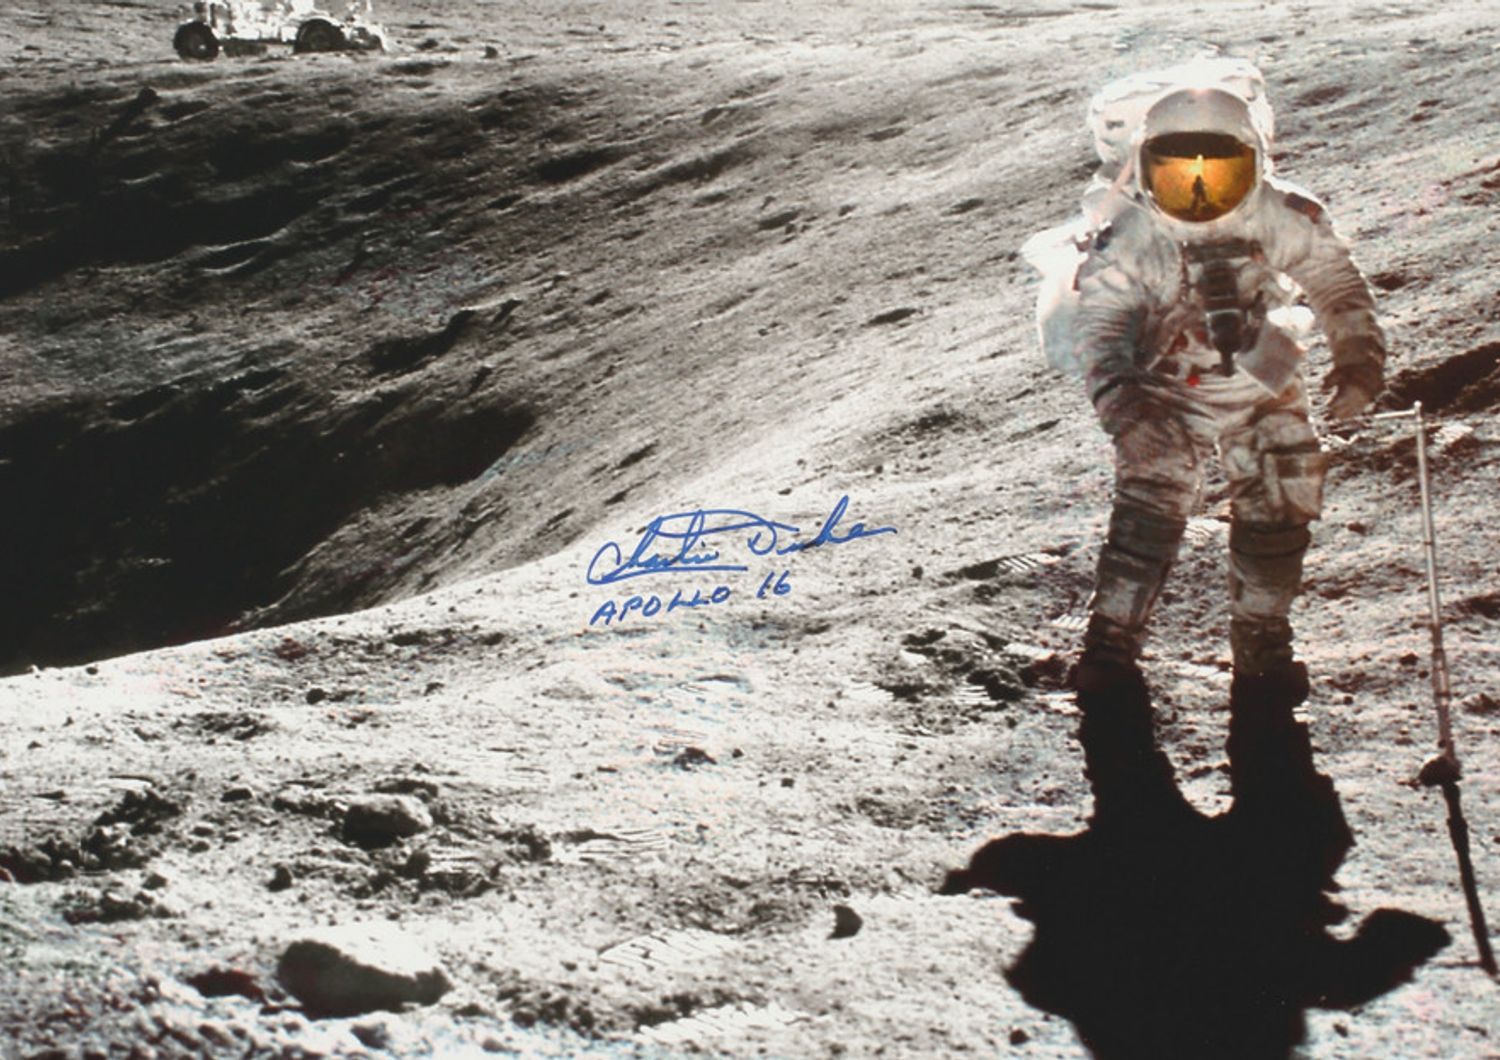 Apollo 16 - Charlie Duke on the lunar surface (www.sothebys.com)&nbsp;